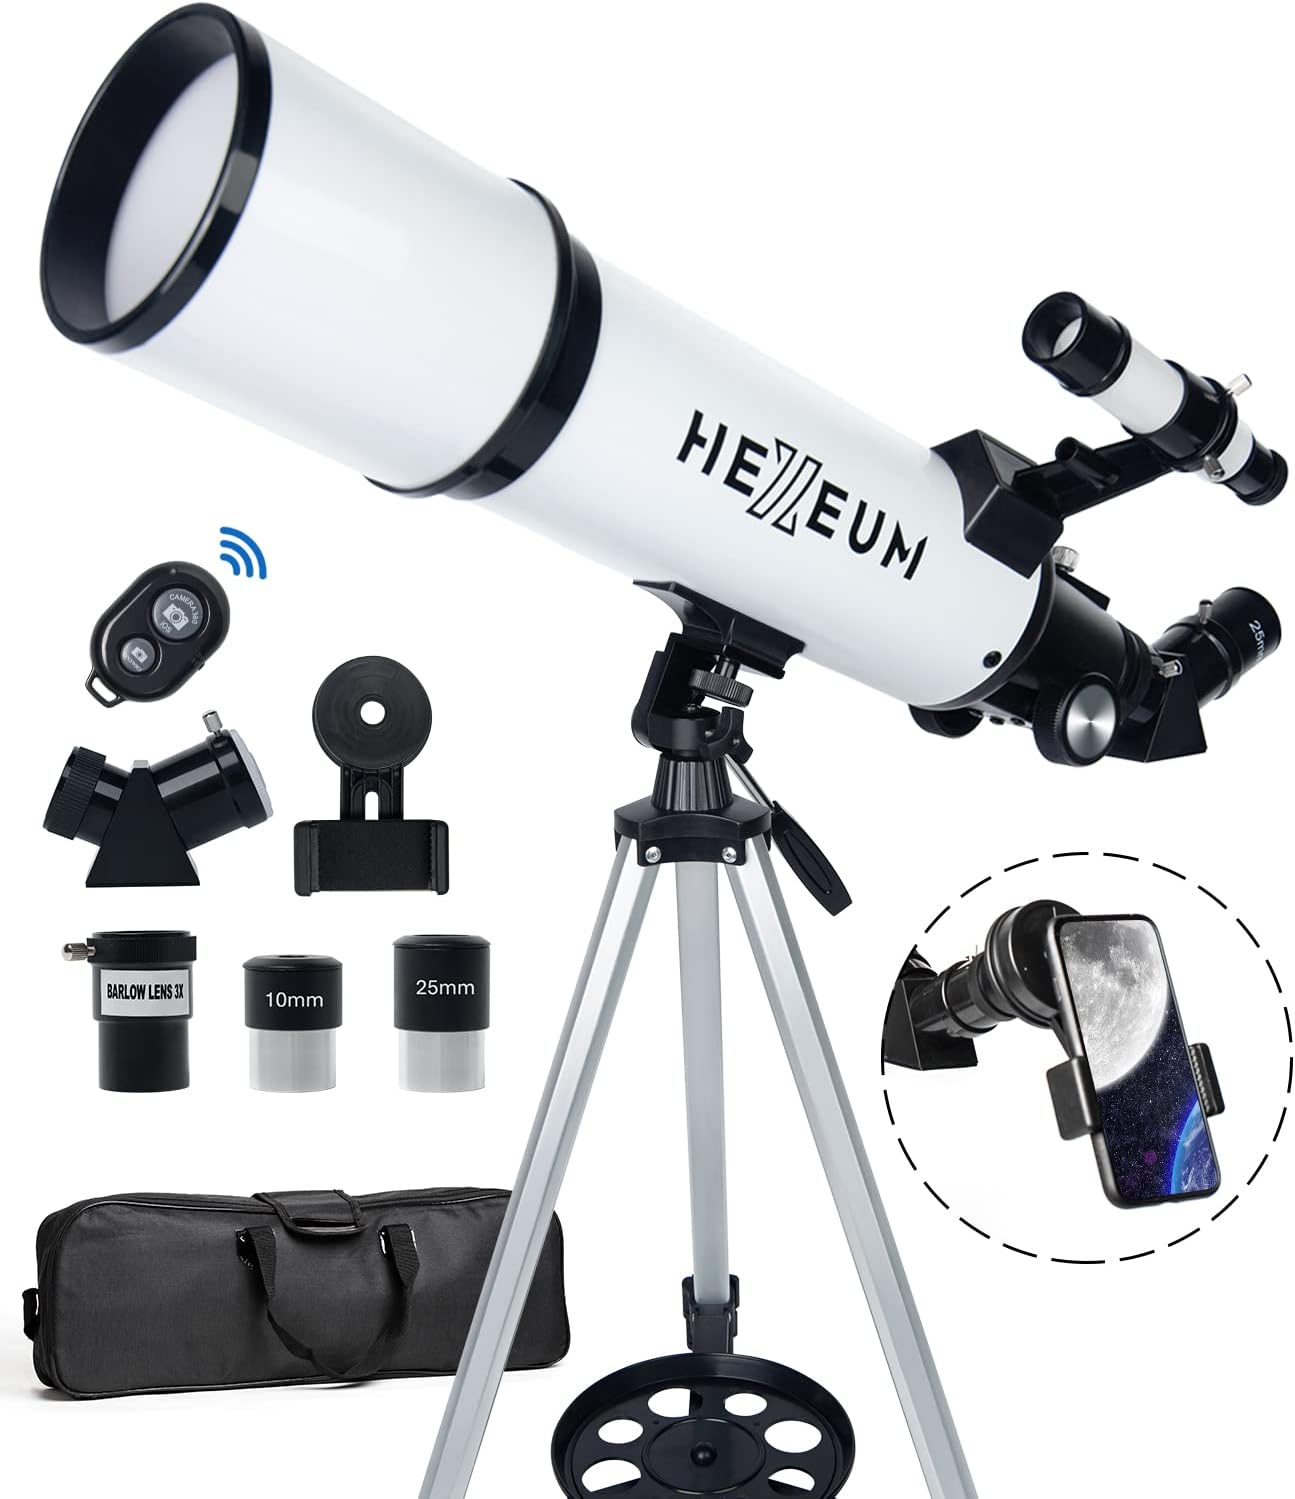 11. HEXEUM Telescope 80mm